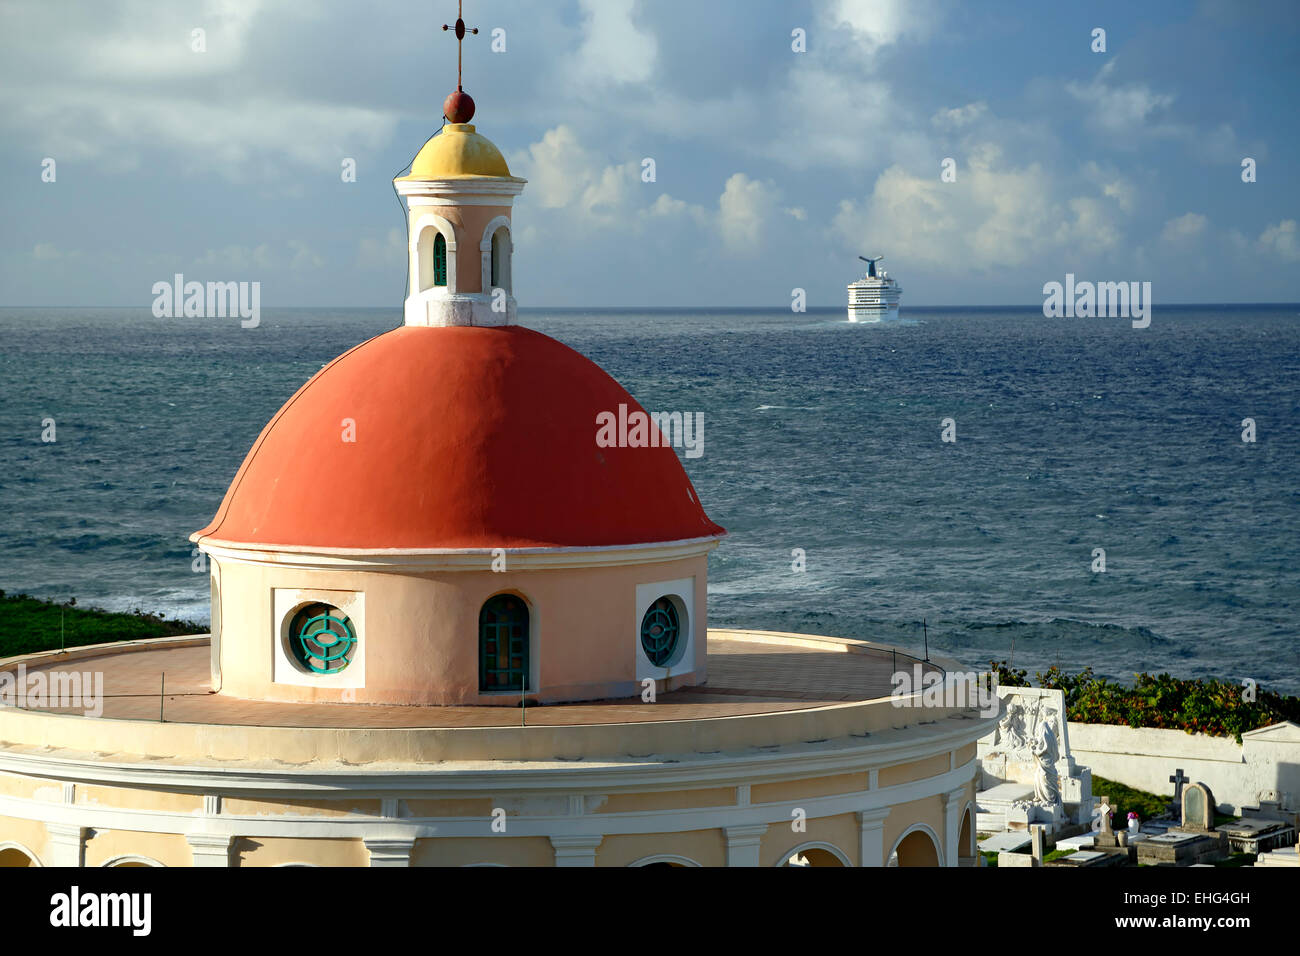 Chapel, San Juan Cemetery (Santa Maria de Pazzis) and cruise ship in distance, Old San Juan, Puerto Rico Stock Photo